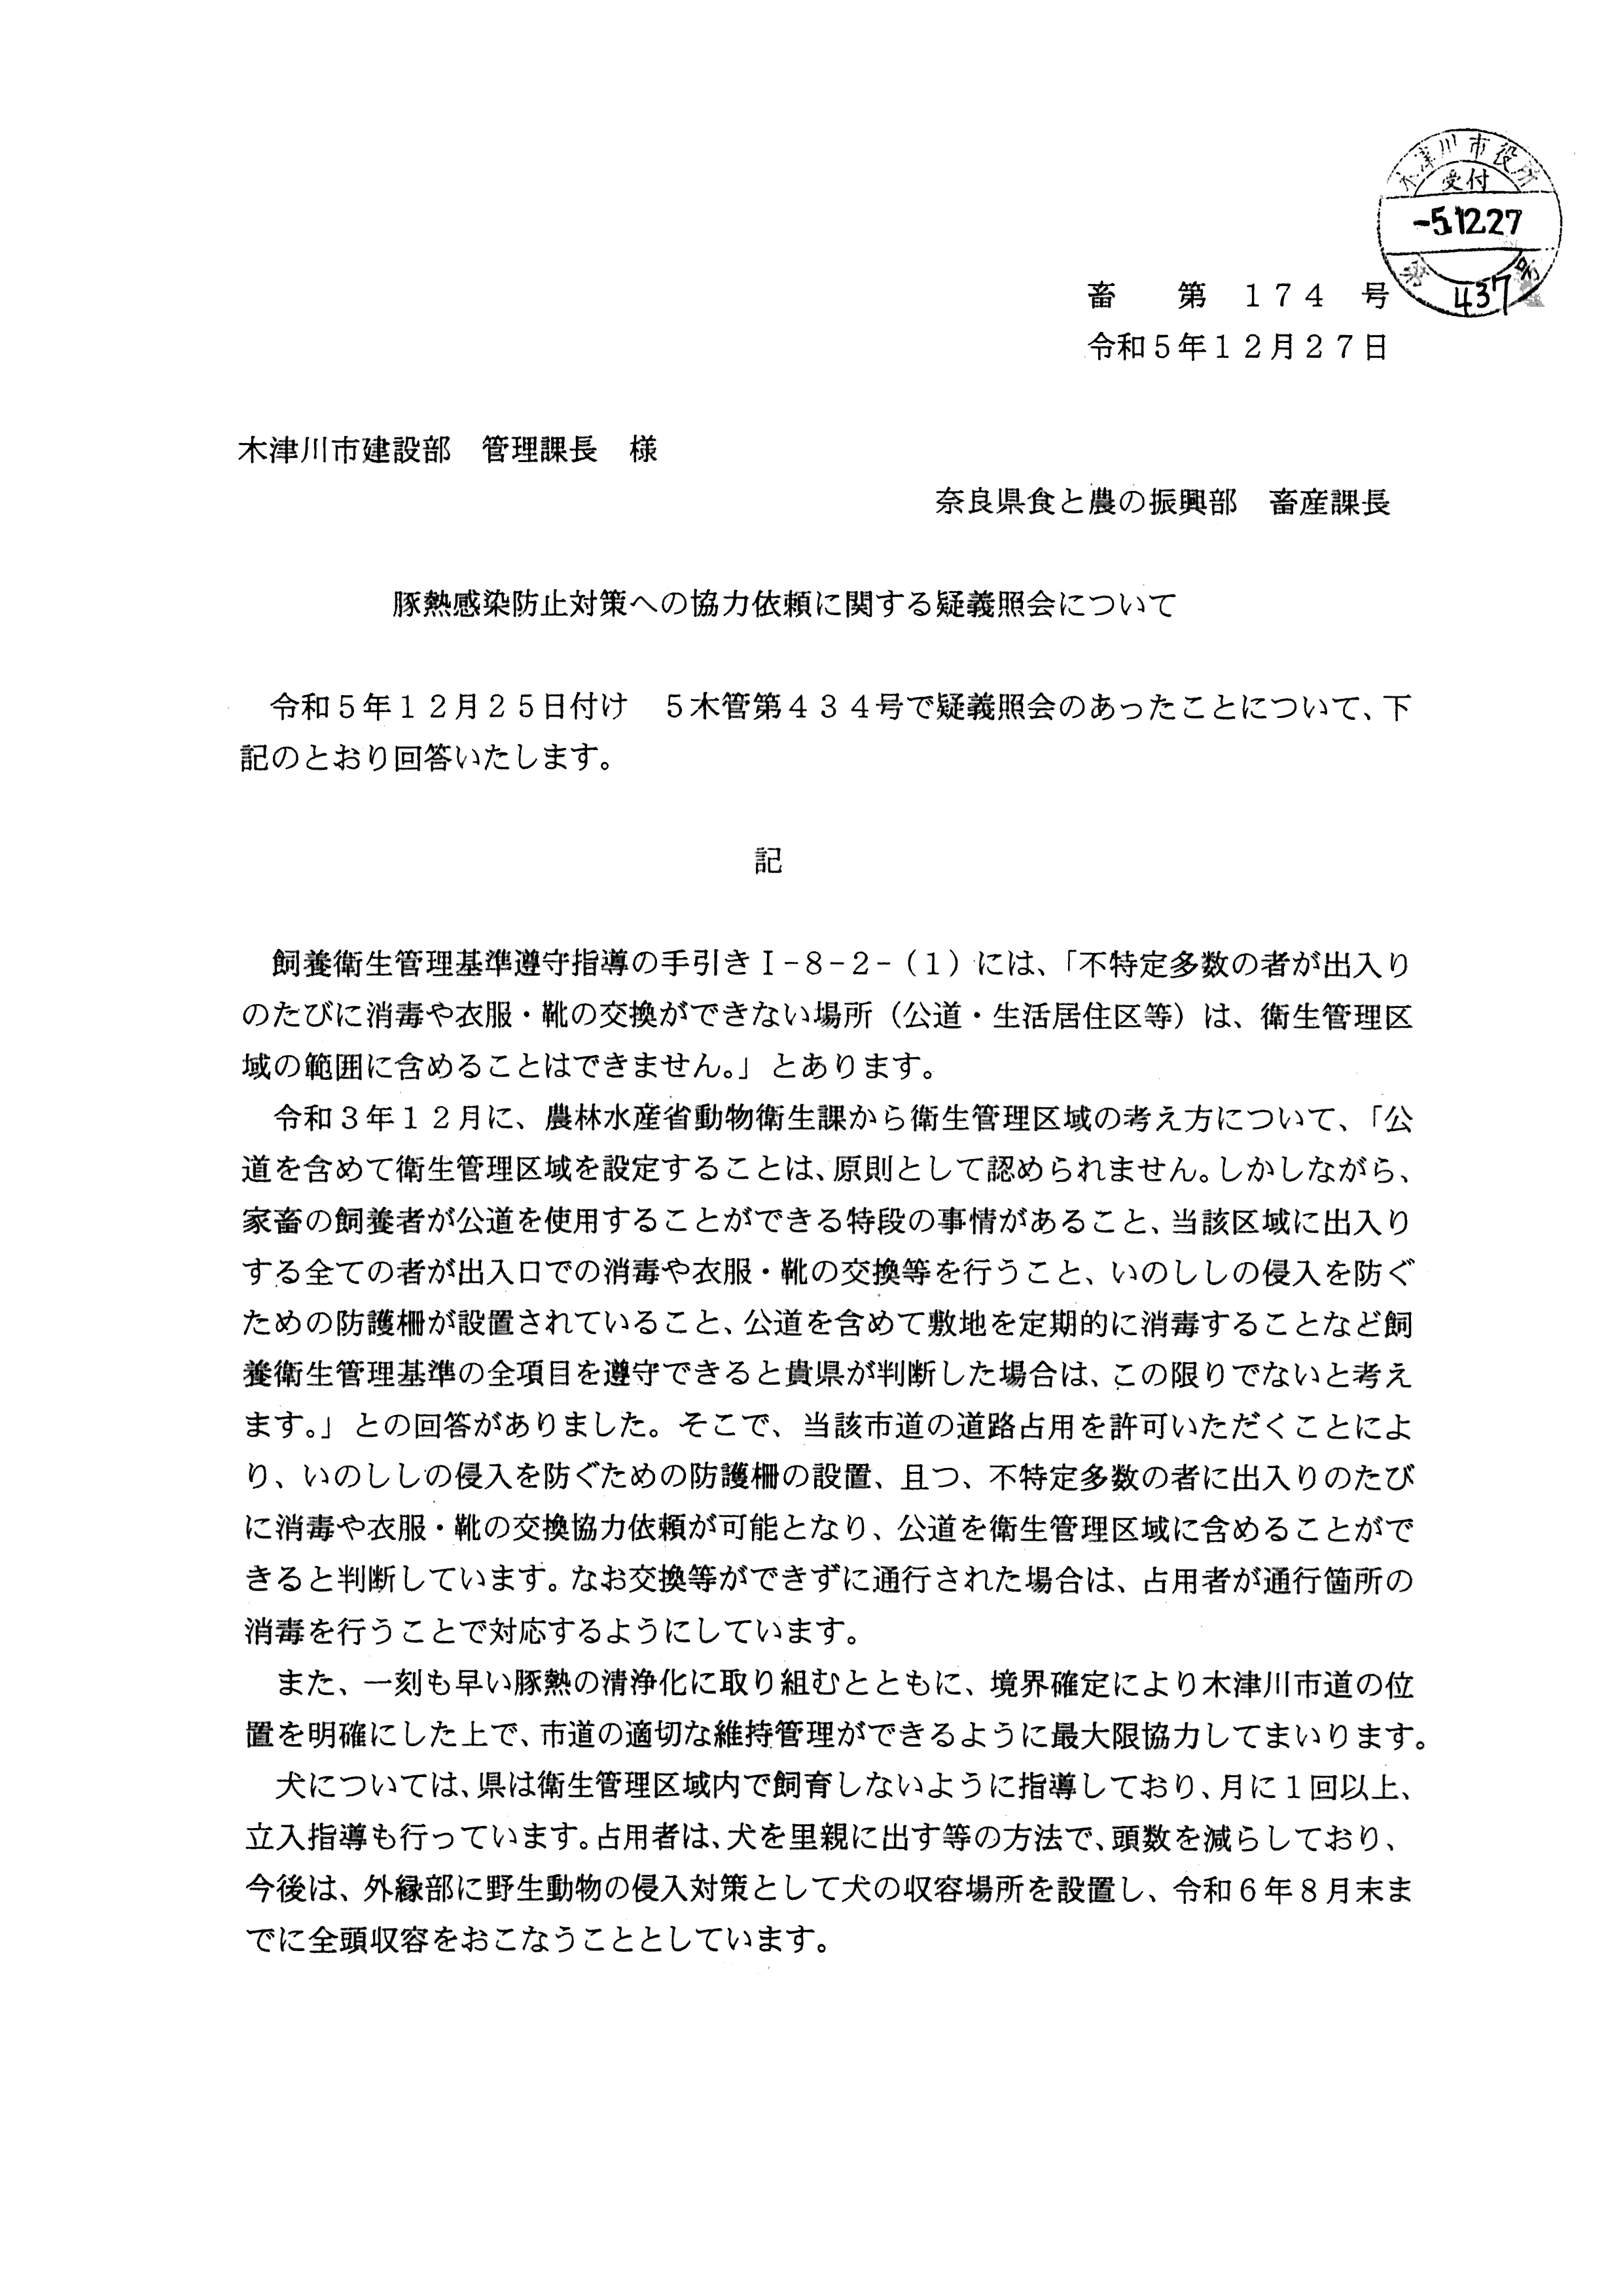 令和6(2024)年3月19日 行政文書不開示（不存在）決定通知書（農林水産省）-11